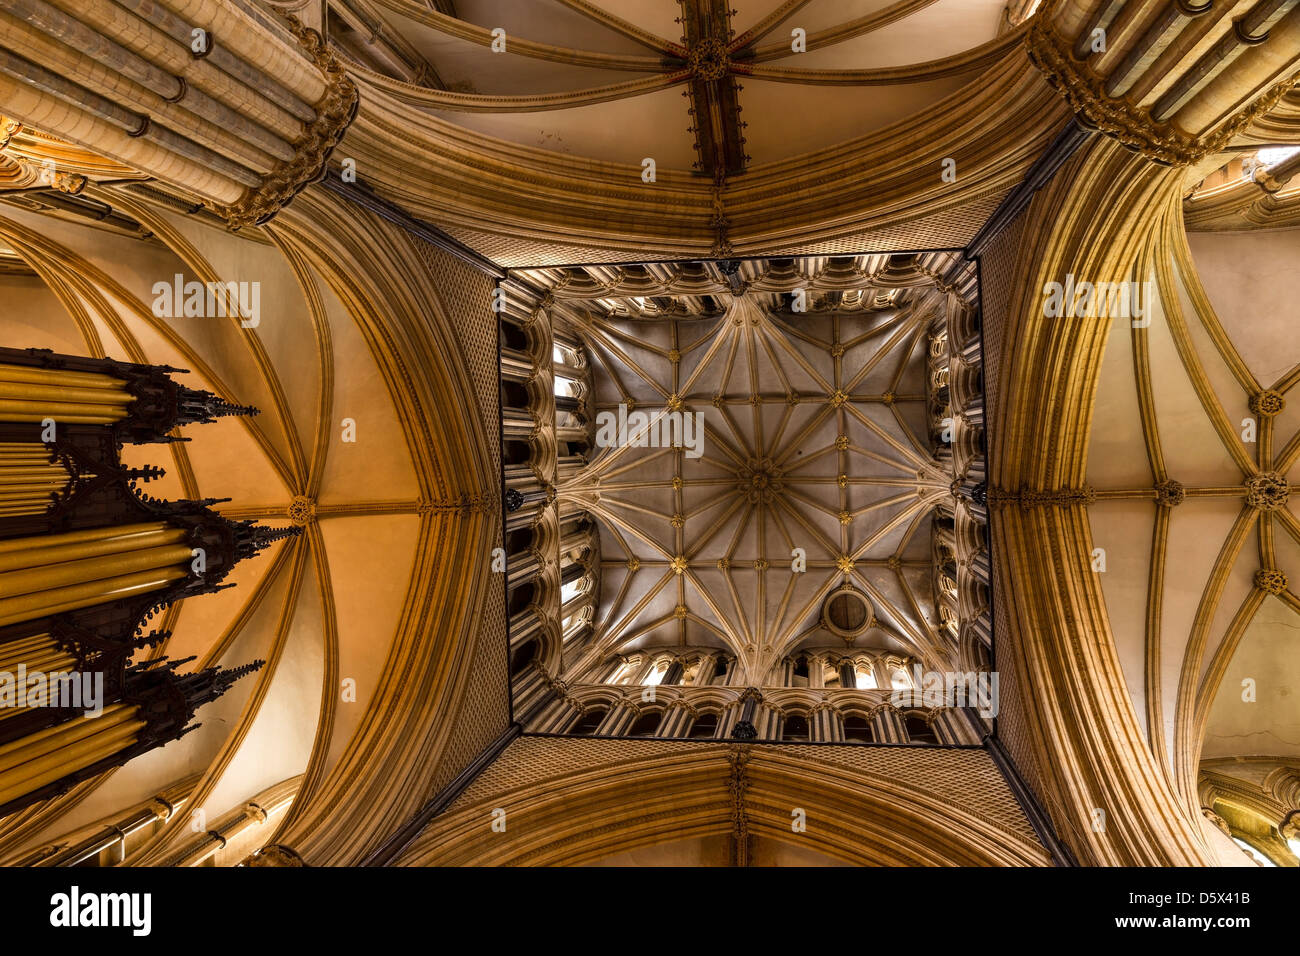 Señaló la masonería arcos góticos, pilares de piedra y techos abovedados bajo la torre central de la Catedral de Lincoln, Inglaterra, Reino Unido. Foto de stock